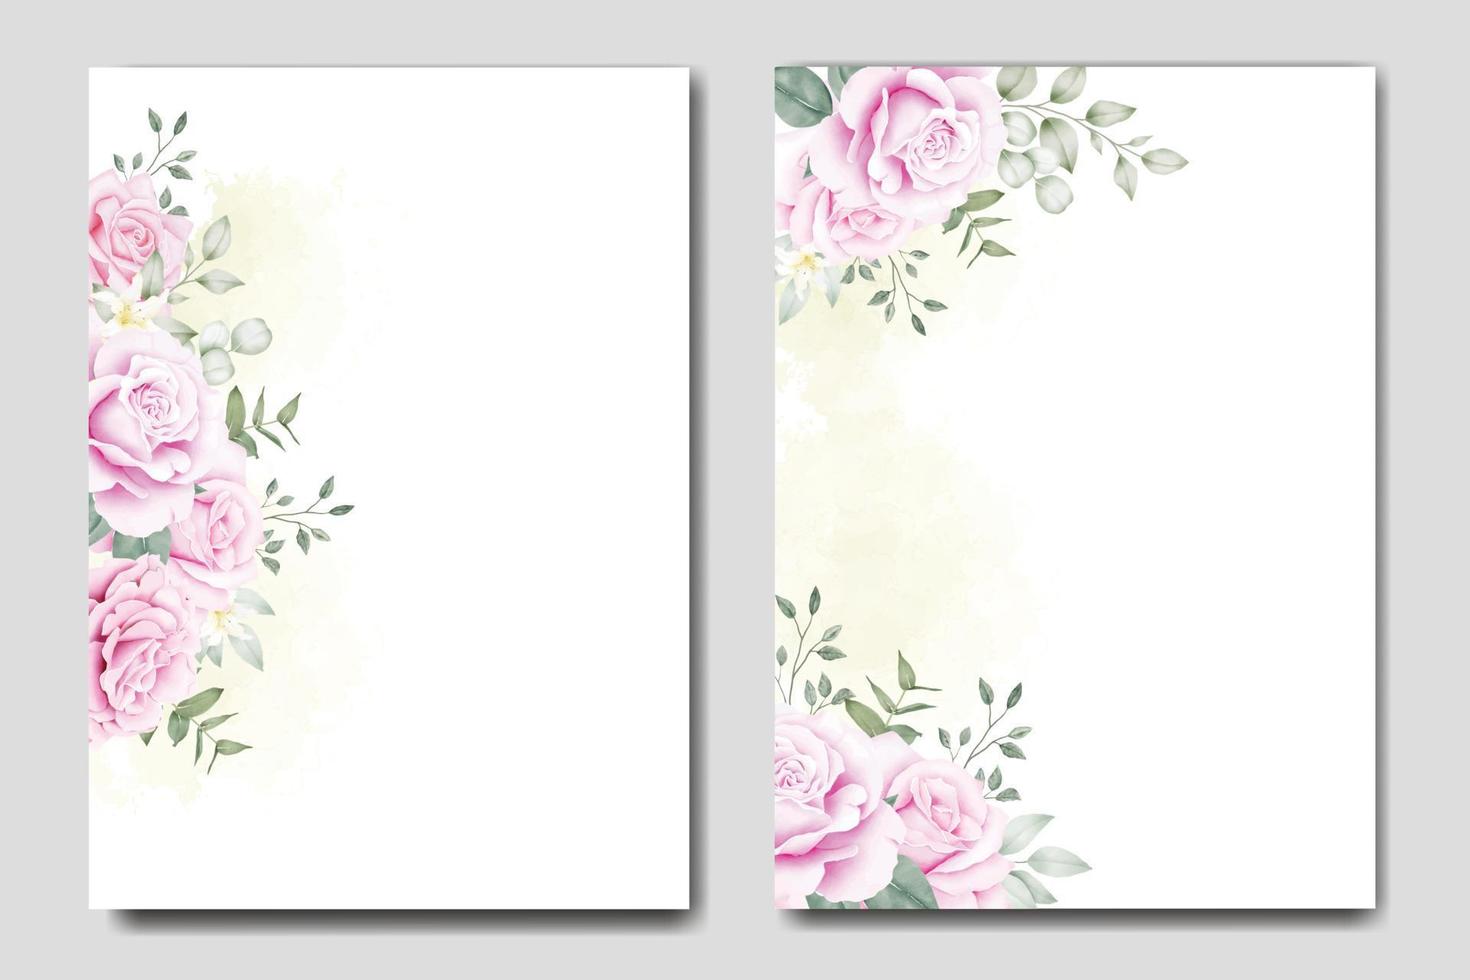 modelo de cartão de convite de casamento de lindas rosas florais vetor